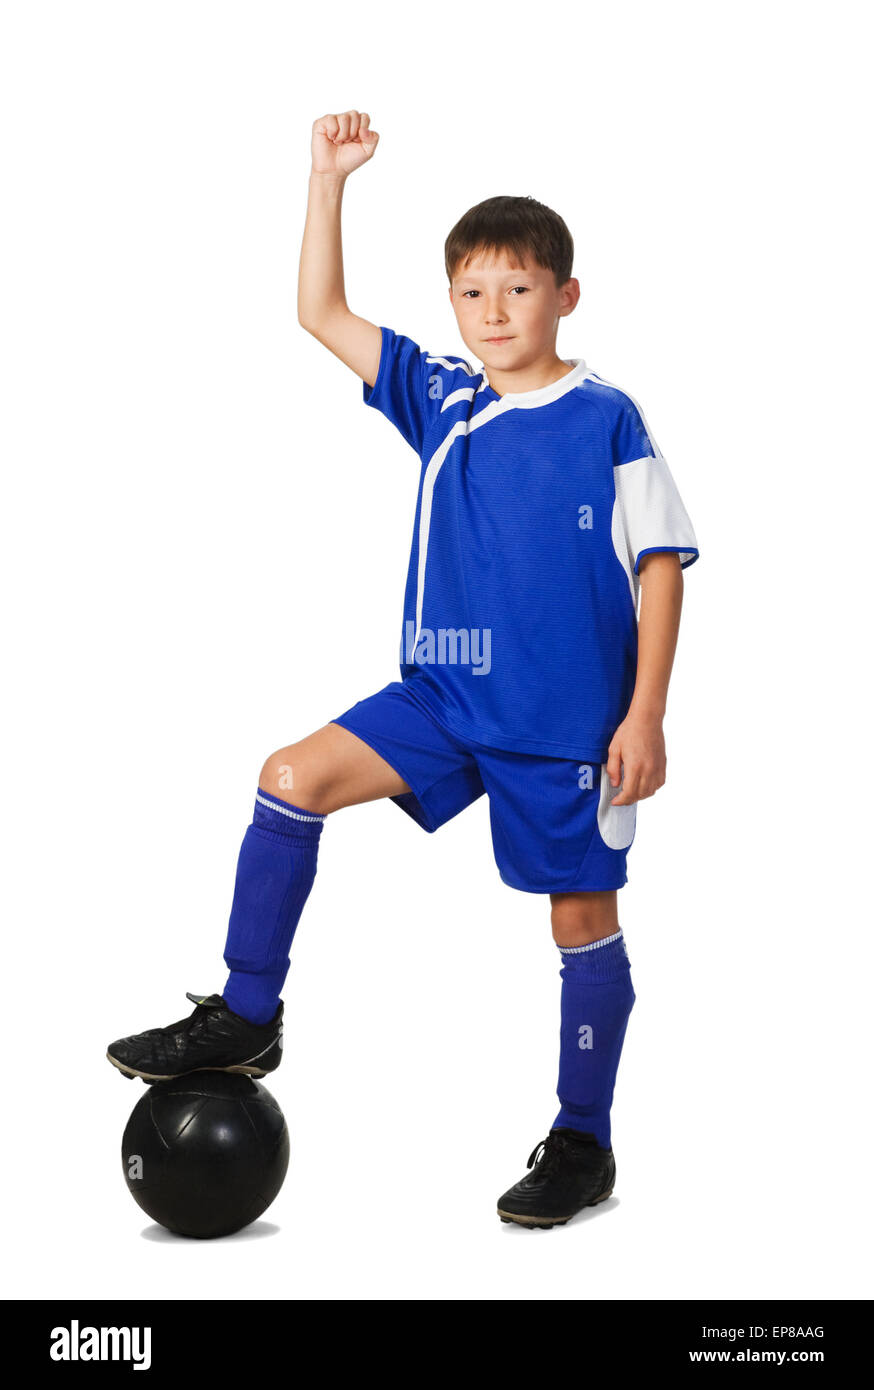 Un jeune garçon joueur de football en uniforme bleu isolated on white Banque D'Images